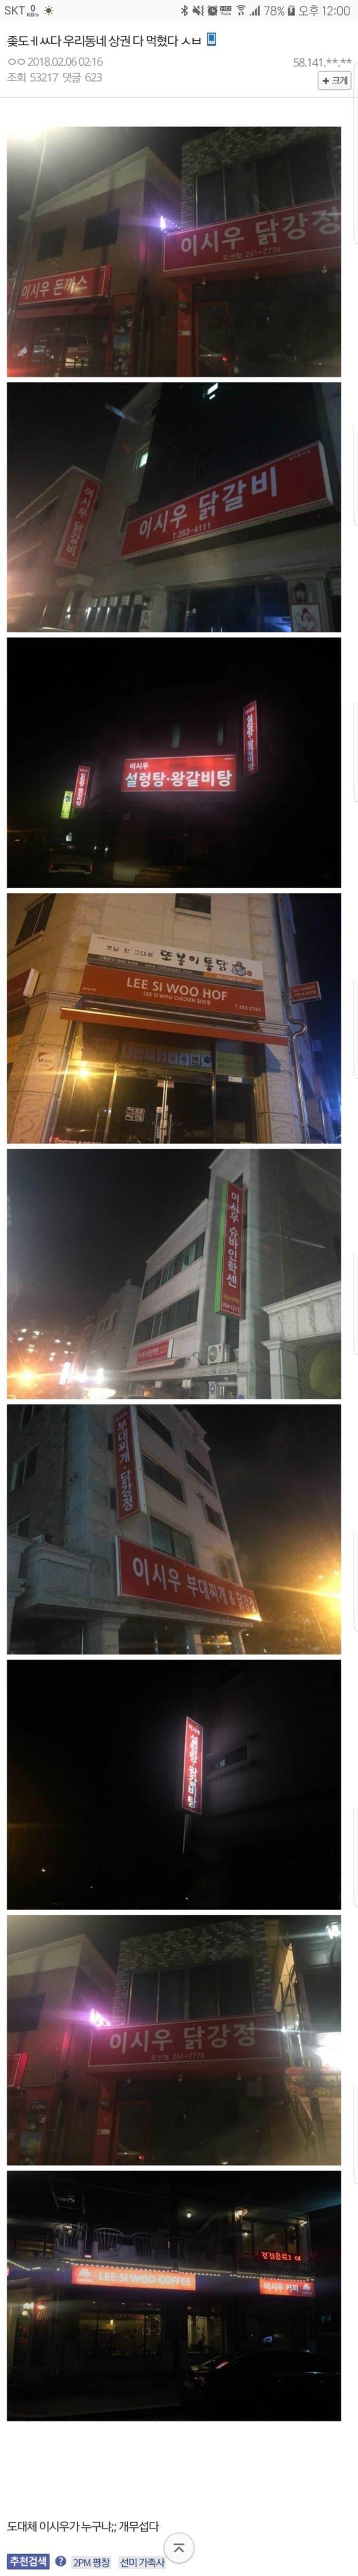 오싹오싹 한국에 있는 빨간간판 골목의 정체.jpg